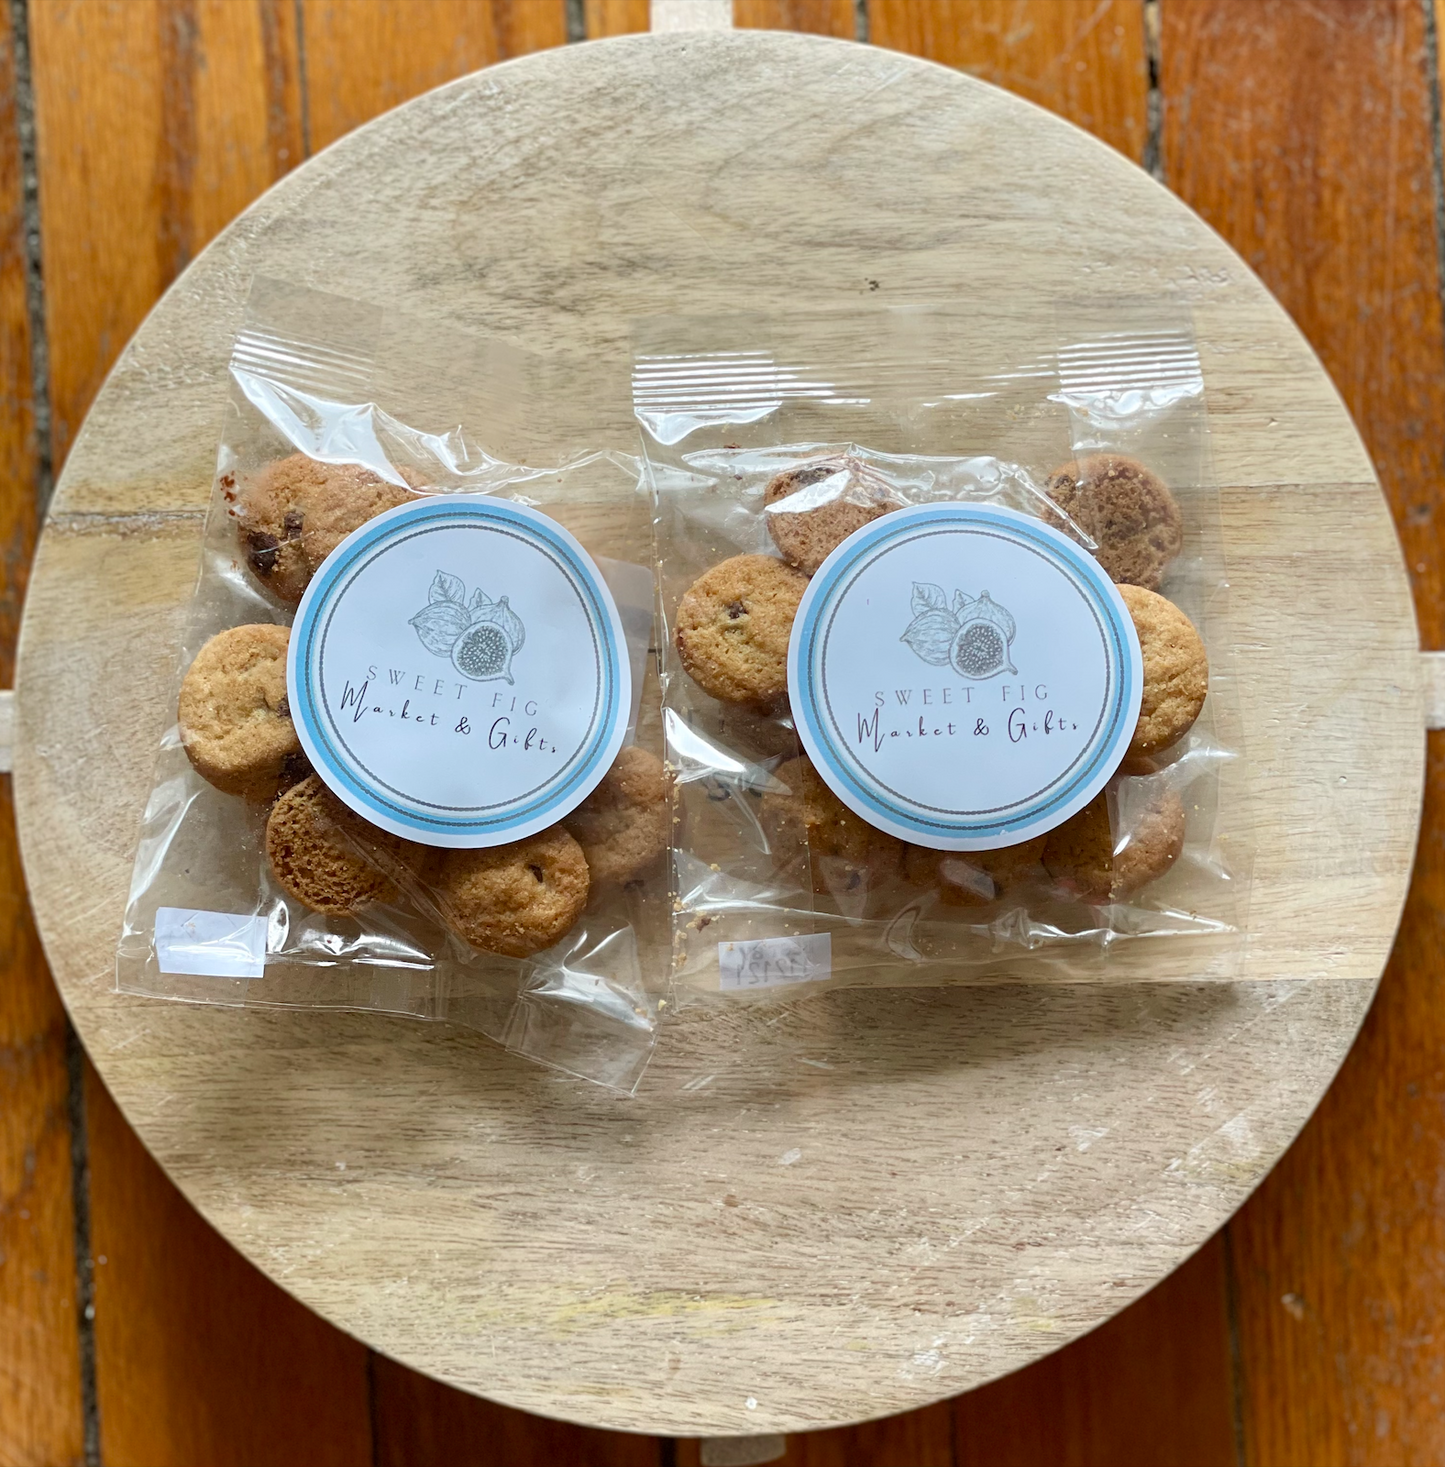 Sweet Fig Branded Chocolate Chip Cookies - 1 oz